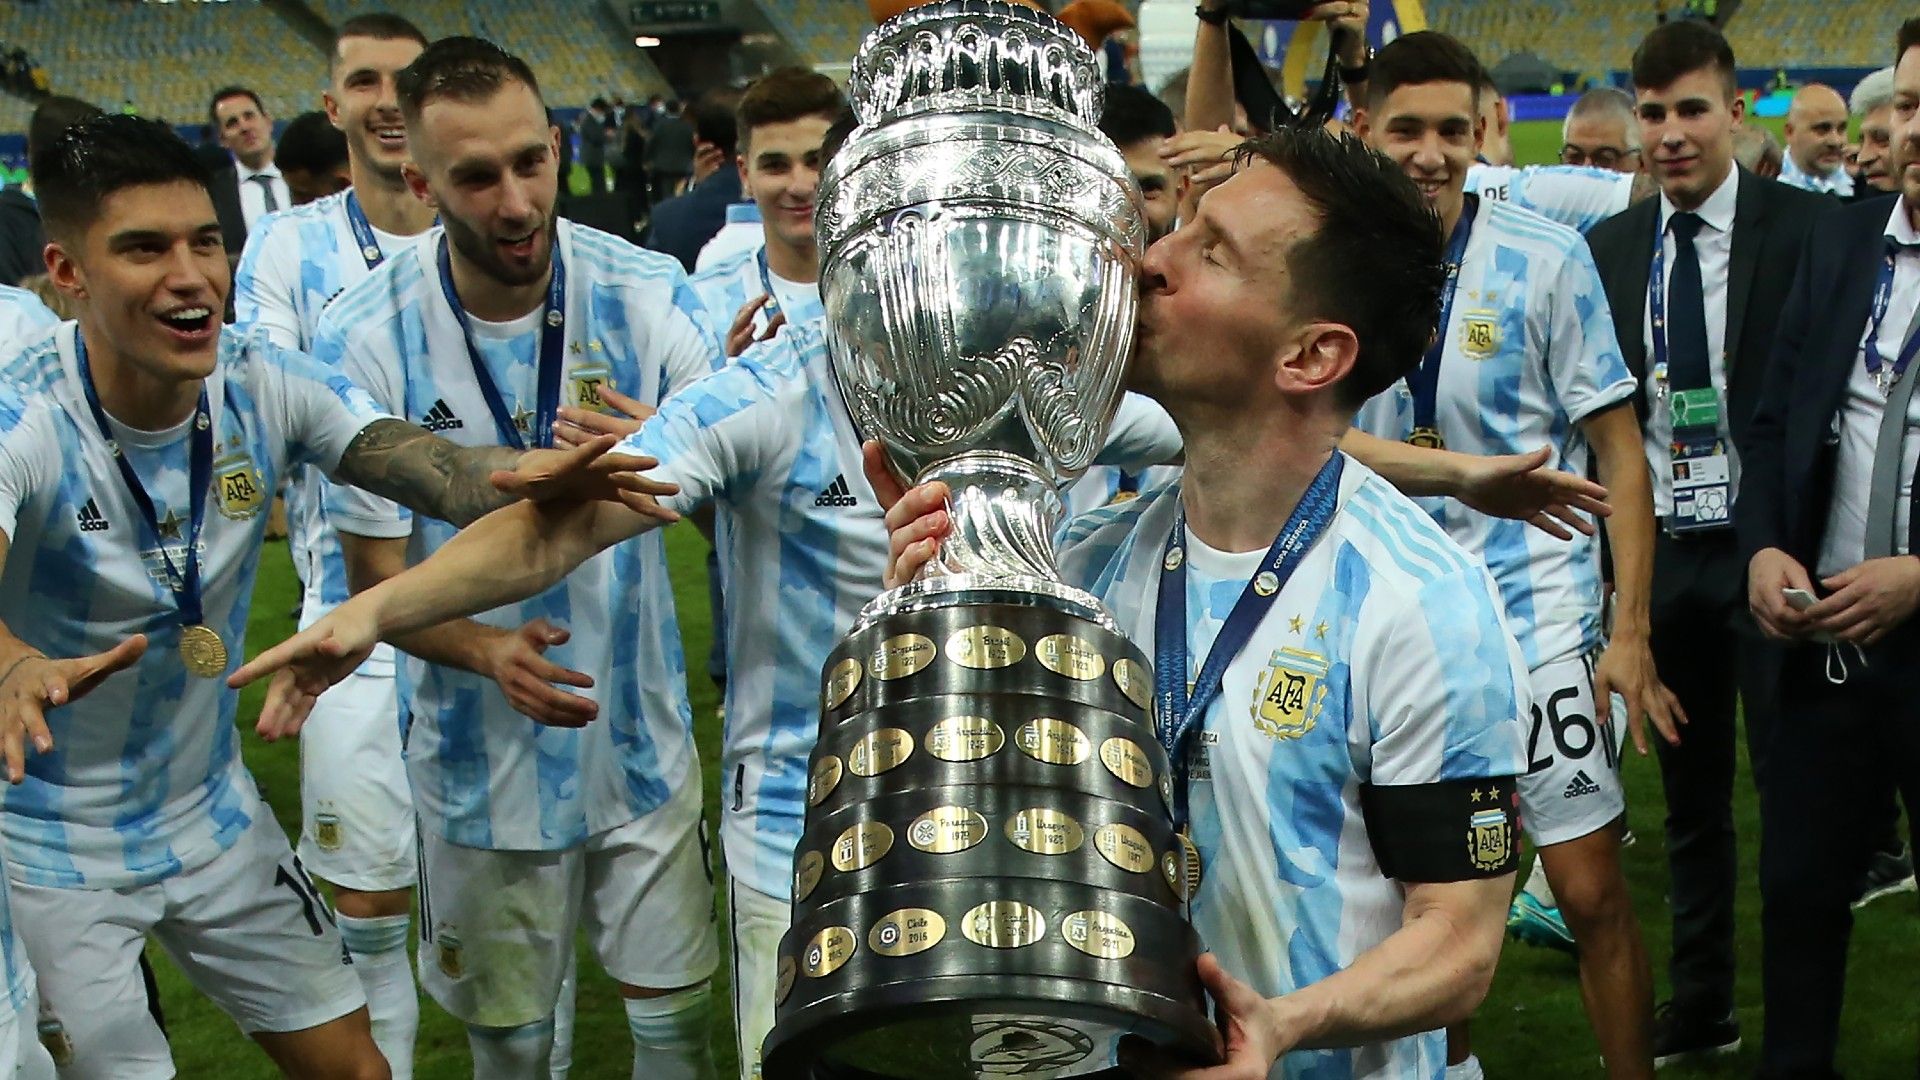 Hình nền Messi Copa: Được biết đến như một trong những cầu thủ xuất sắc nhất mọi thời đại, Messi sẽ giới thiệu cho bạn sự kỳ diệu và sức mạnh của anh ta trong Cuộc thi Copa America. Hình nền Messi Copa đắm say lòng người với tình yêu và dành riêng cho fan hâm mộ đích thực.